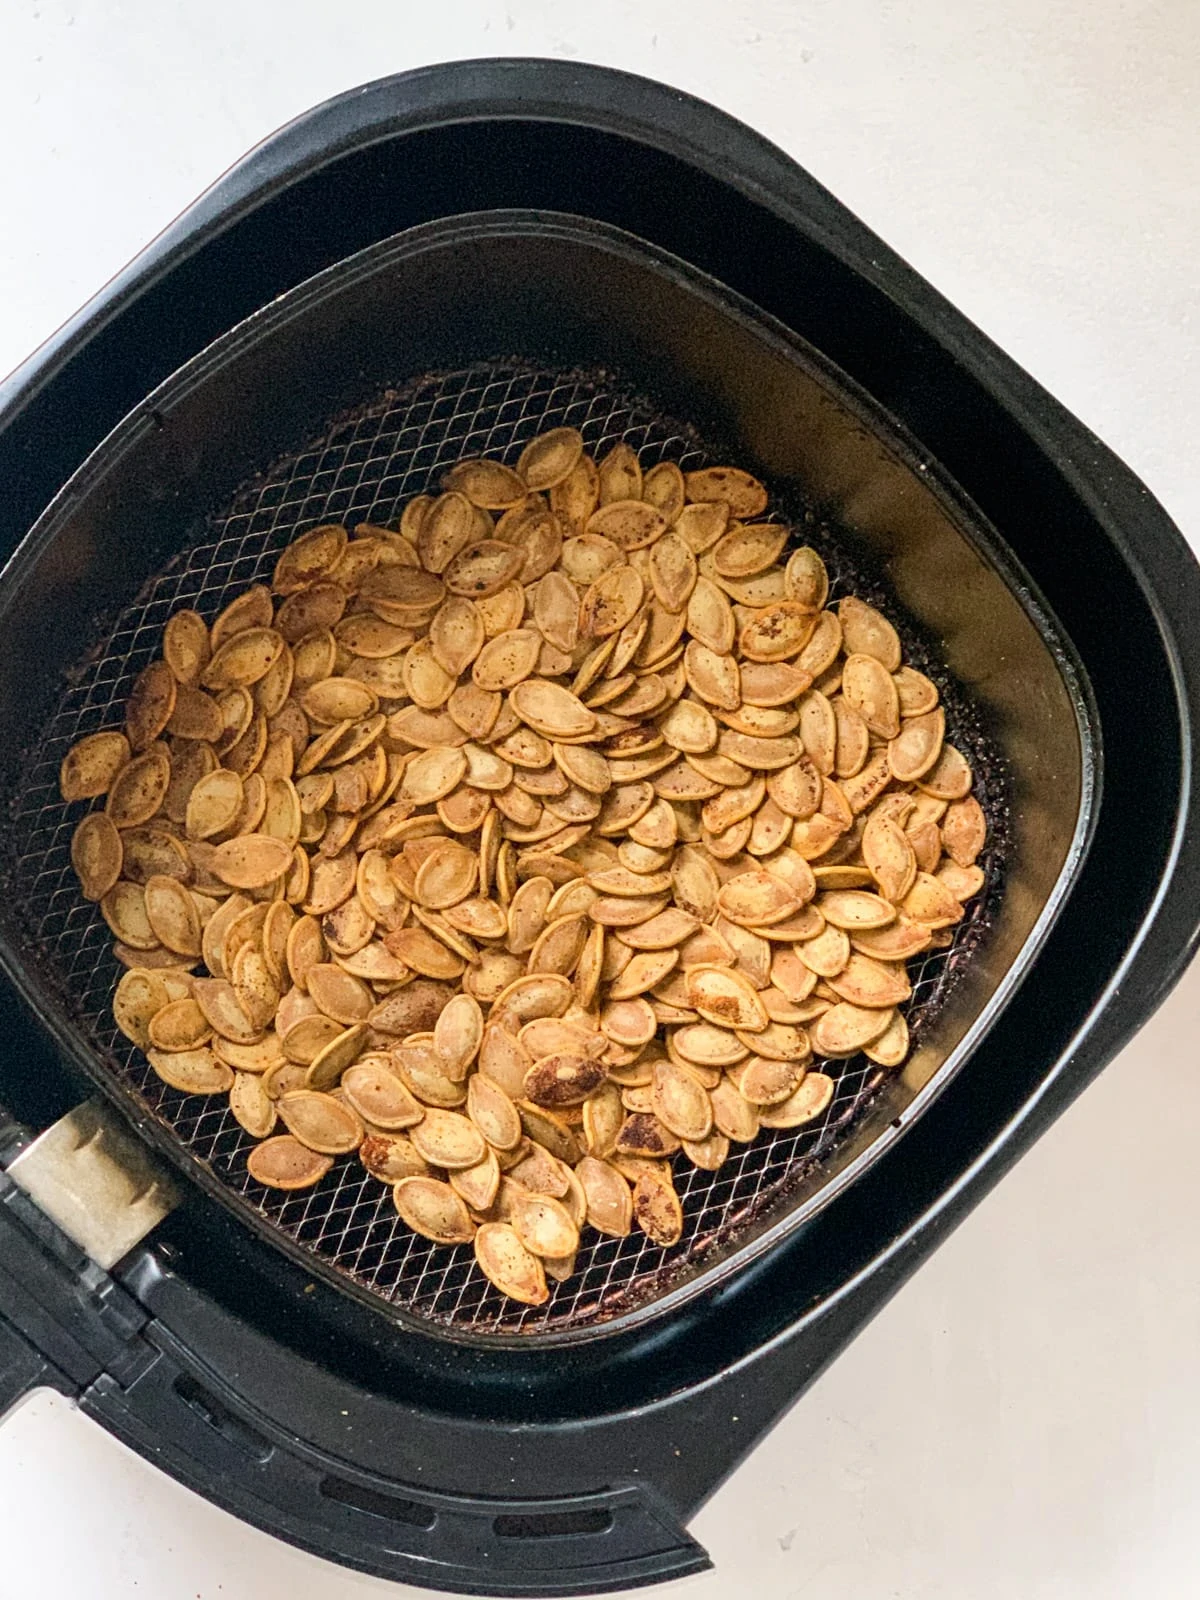 Pumpkin seeds roasted in an air fryer